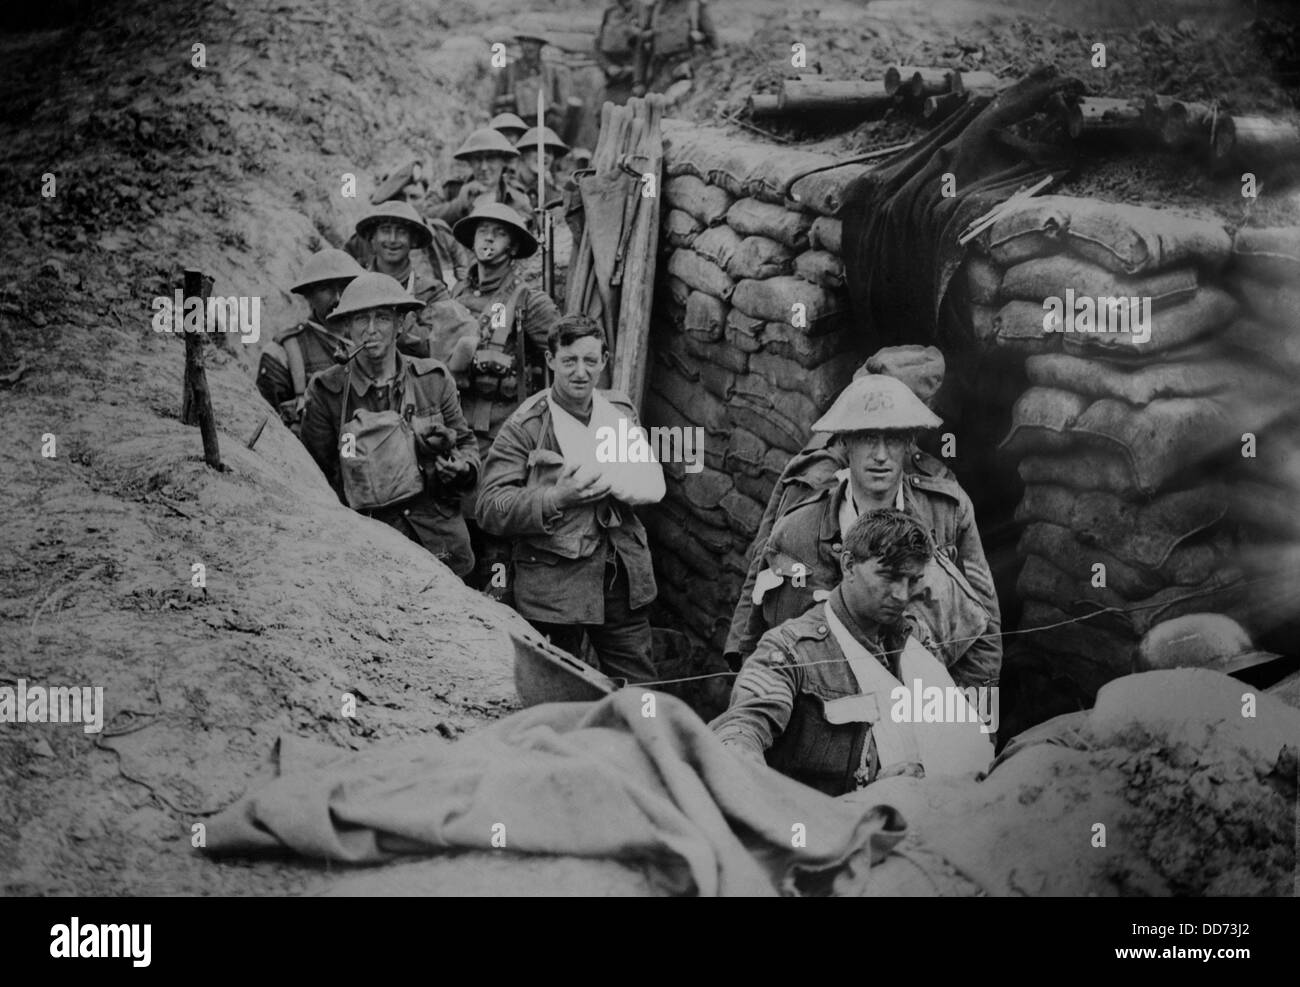 La Seconde Guerre mondiale, 1 bandage des soldats dans une tranchée de bataille, 1915-1918. (BSLOC 2012 4 65) Banque D'Images